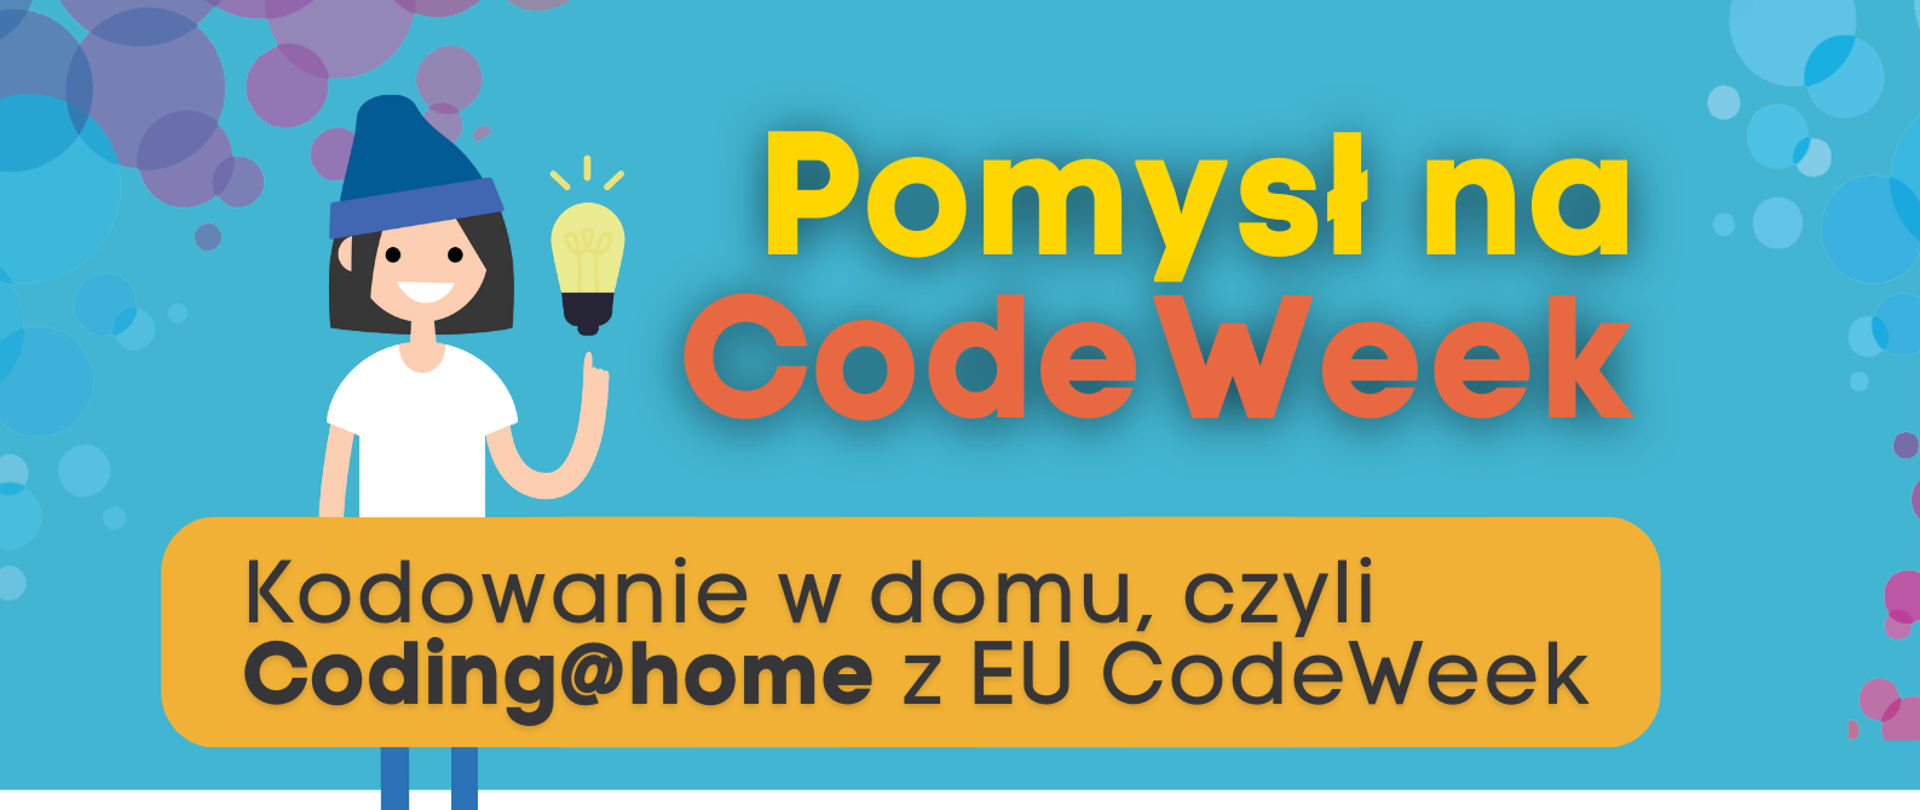 Grafika przedstawia plakat zachęcający do udziału w CodeWeek. W górnej części napis "Pomysł na CodeWeek" oraz uśmiechnięta dziewczynka z żarówką. Pod spodem napis " Kodowanie w domu, czyli Coding@home z EU CodeWeek”. Poniżej w formie etykiet przedstawione są kolejne kroki zgłoszenia inicjatywy:
„1. Wejdź na codeweek.eu”,
„2. Poznaj różnorodne gry i zabawy z kodowaniem dla początkujących”
„3. Zgłoś swoje wydarzenie na codeweek.eu/add i zostań częścią codeweekowej społeczności "
"4. Pobierz certyfikat".
W dolnej części tekstu kod QR prowadzący do strony www.koduj.gov.pl, adresy Facebook CodeWeekPL, Instagram codeweekpl i adres e-mailowy programowanie@mc.gov.pl oraz logotypy Funduszy Europejskich, KPRM, NASK i Unii Europejskiej. Powyżej krótka informacja o CodeWeek "CodeWeek to społeczna inicjatywa, w ramach której europejskie państwa „ścigają się” w liczbie zorganizowanych wydarzeń związanych z programowaniem. W 2021 roku Europejski Tydzień Kodowania obchodzimy w dniach 9-24 października, ale wydarzenia związane z promocją programowania możesz zgłaszać cały rok.".
